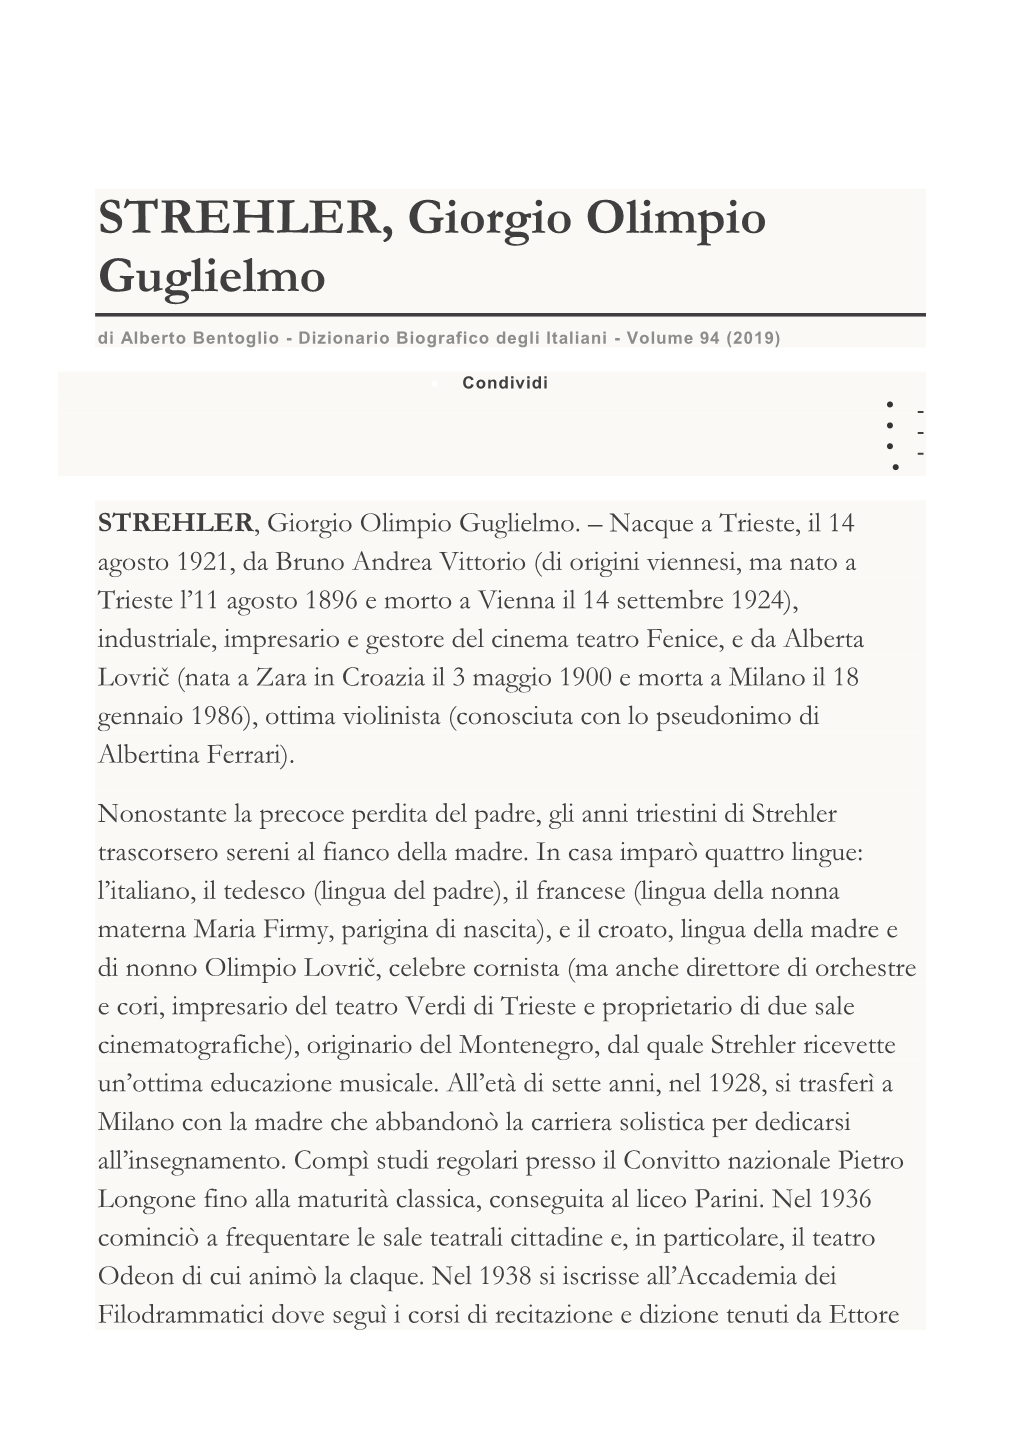 STREHLER, Giorgio Olimpio Guglielmo Di Alberto Bentoglio - Dizionario Biografico Degli Italiani - Volume 94 (2019)